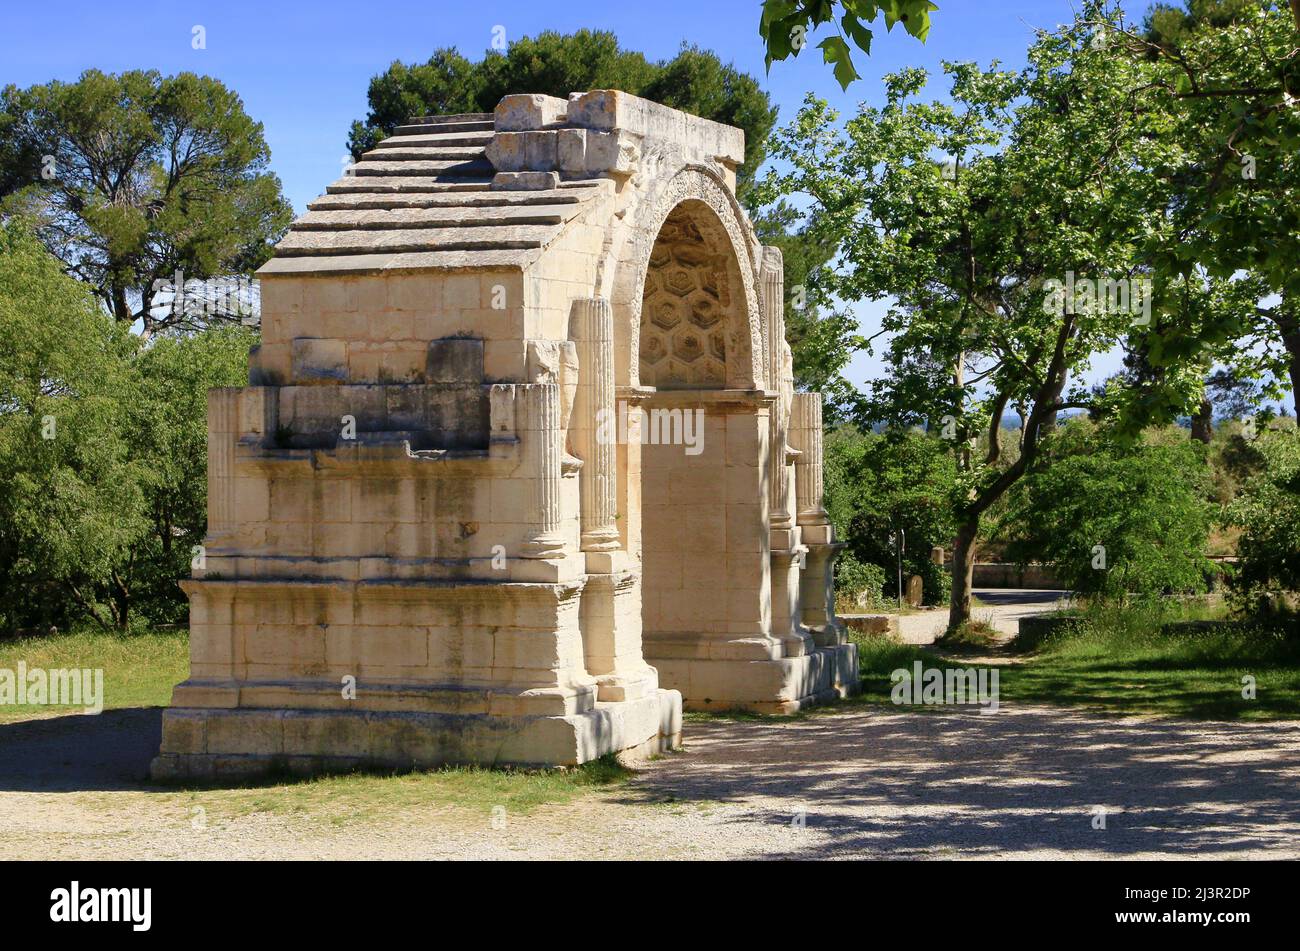 Ancient Roman remains in Saint-Rémy de Provence. Stock Photo